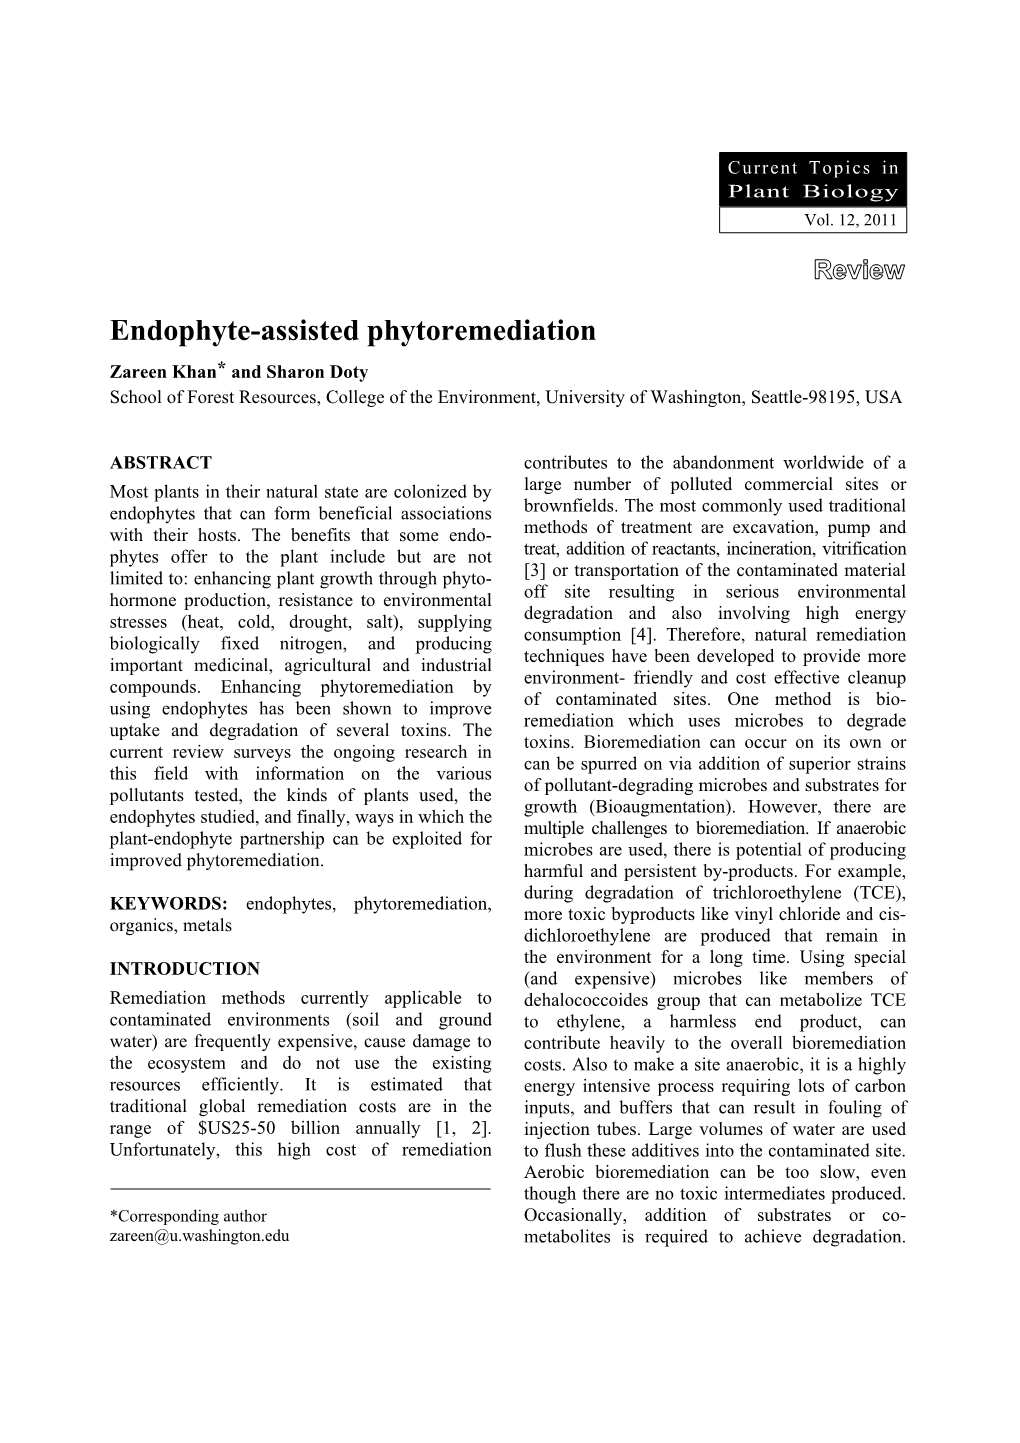 Endophyte-Assisted Phytoremediation